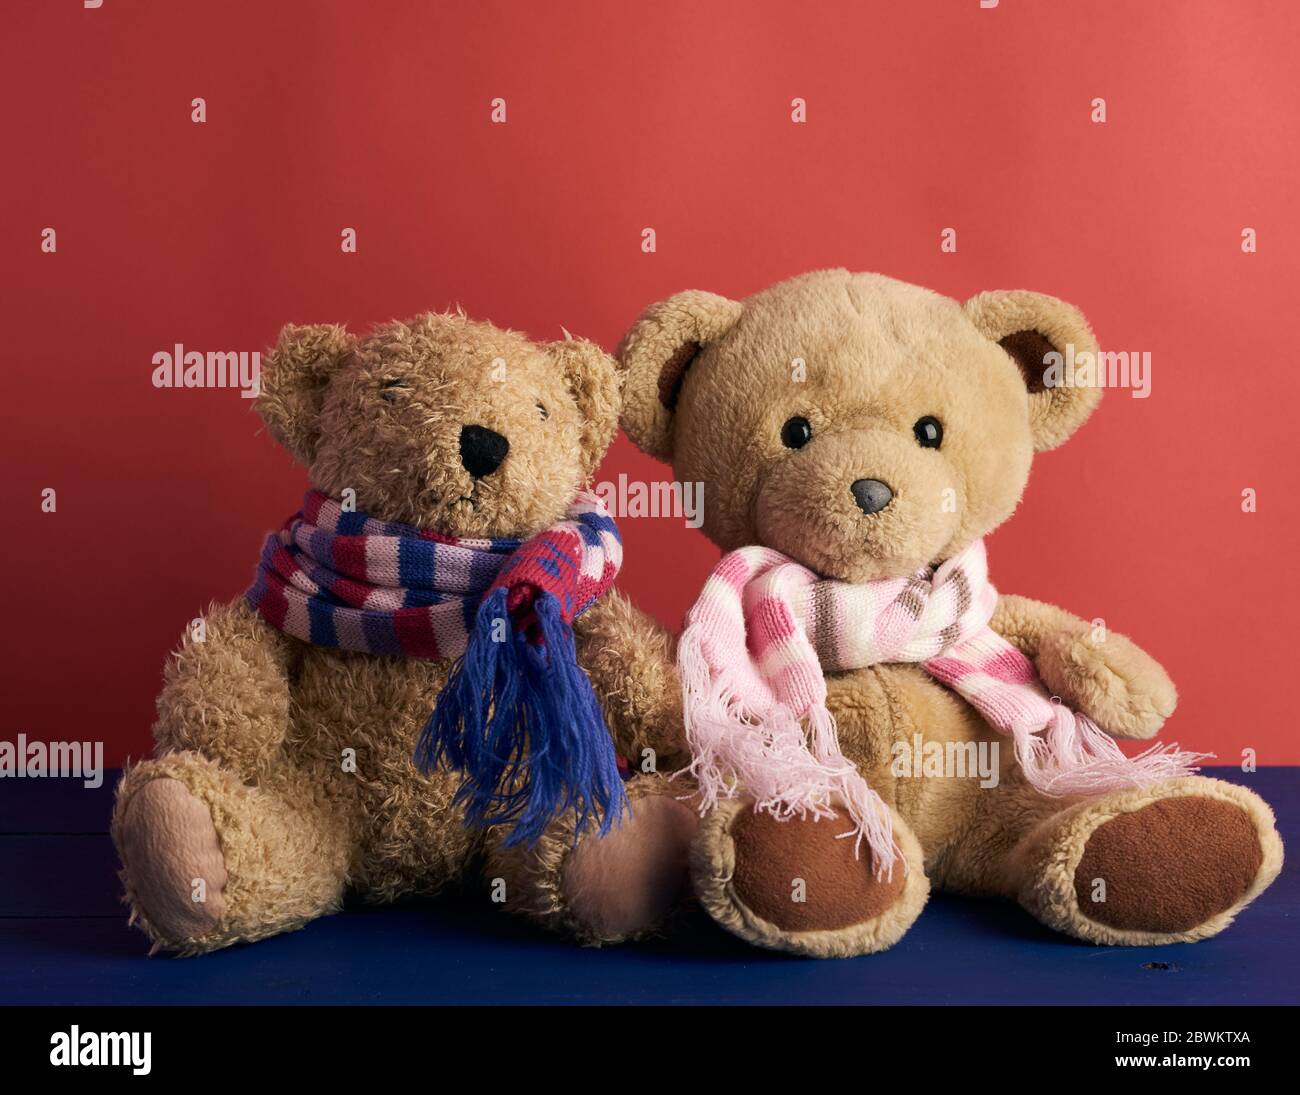 deux ours en peluche dans des foulards sont assis sur un fond rouge, gros plan Banque D'Images